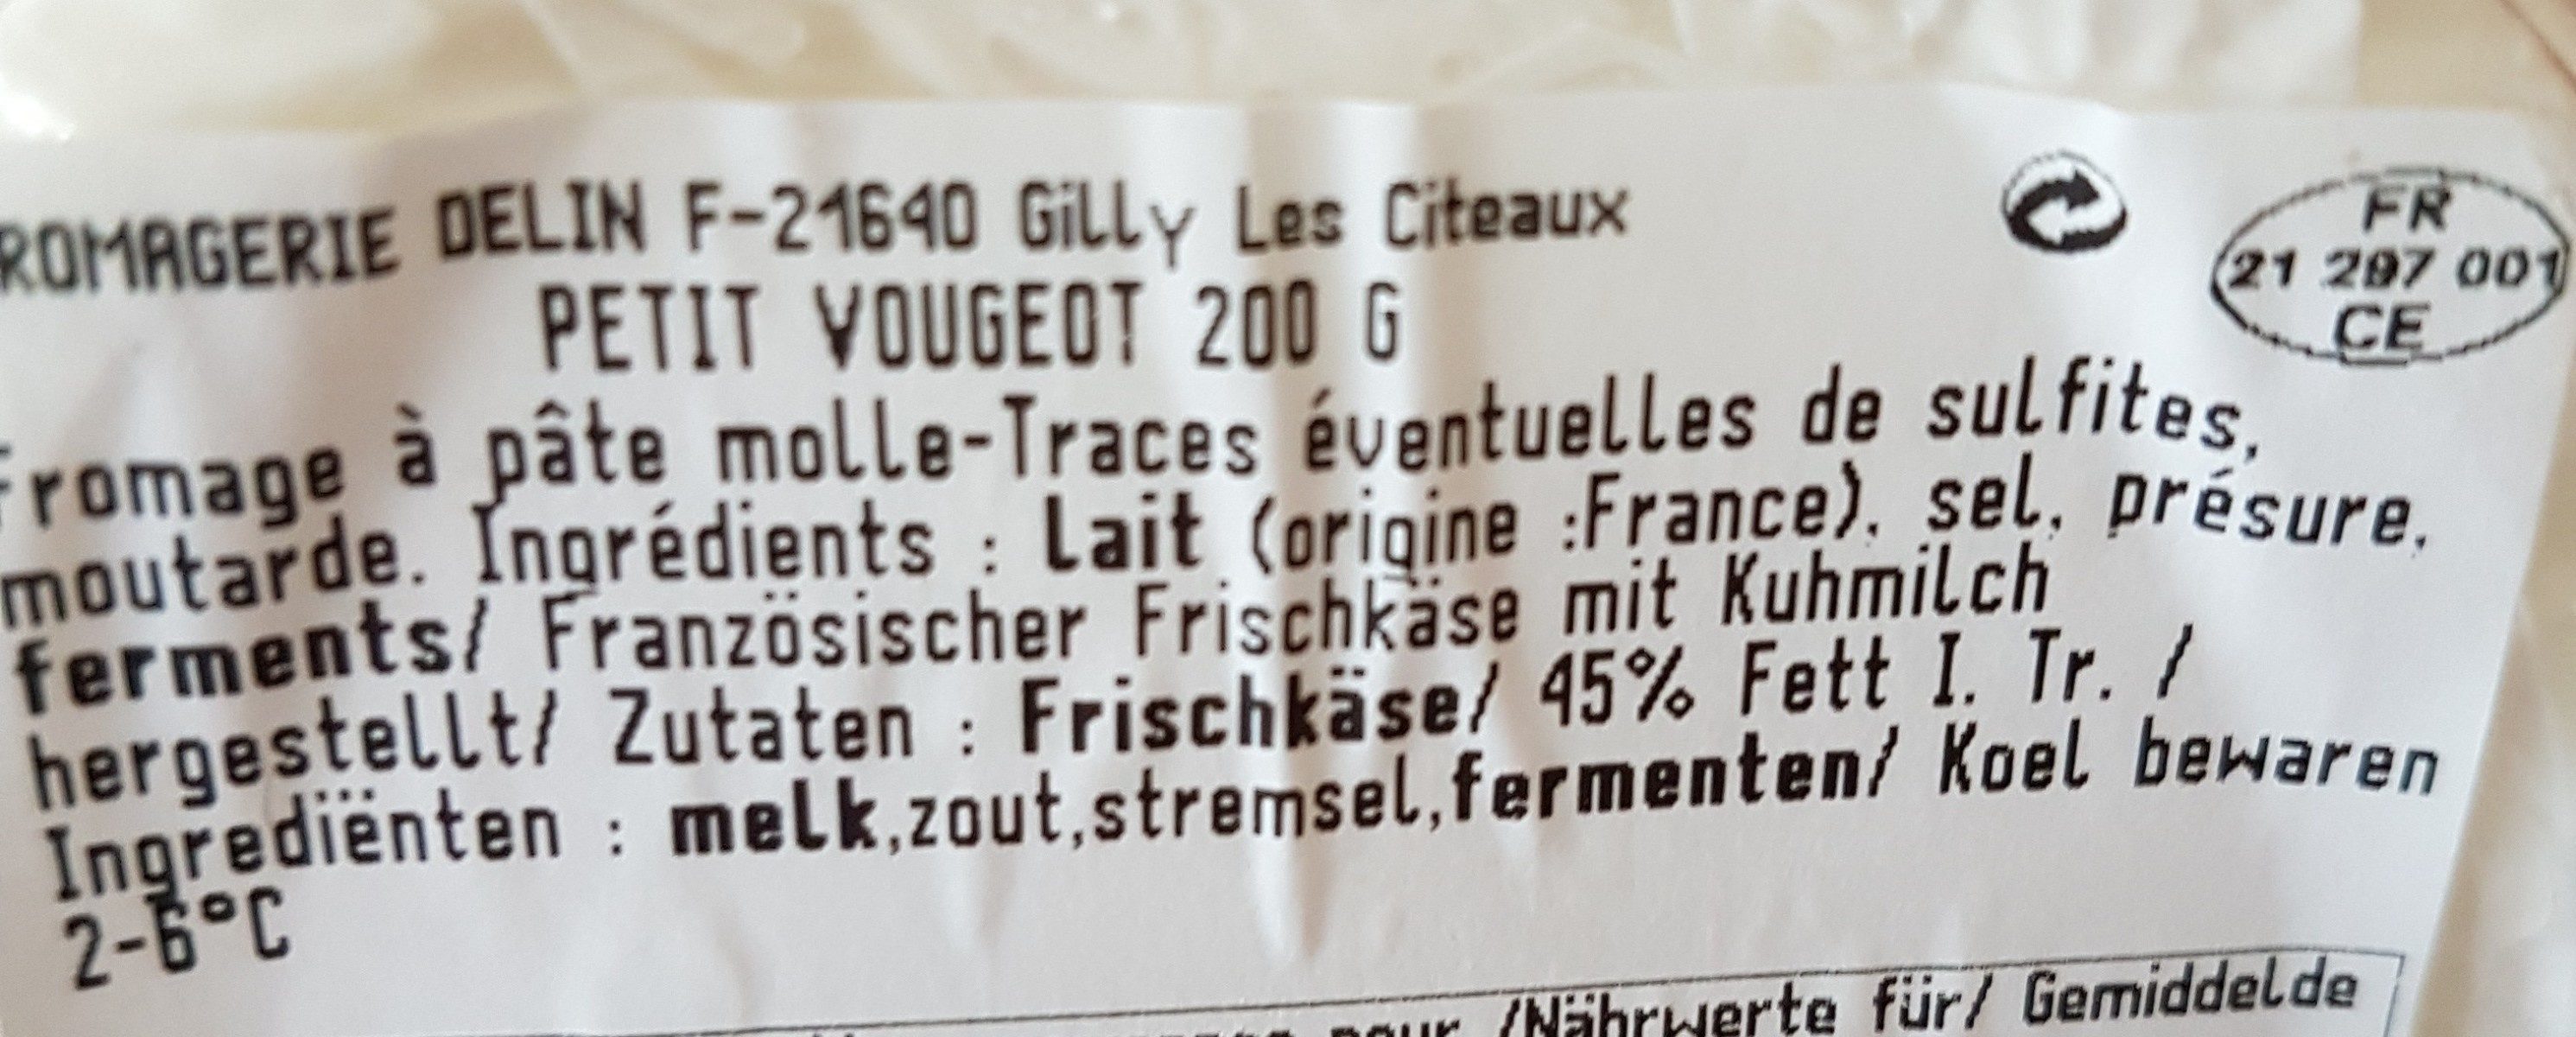 Fromage Le Petit Vougeot - Ingredients - fr